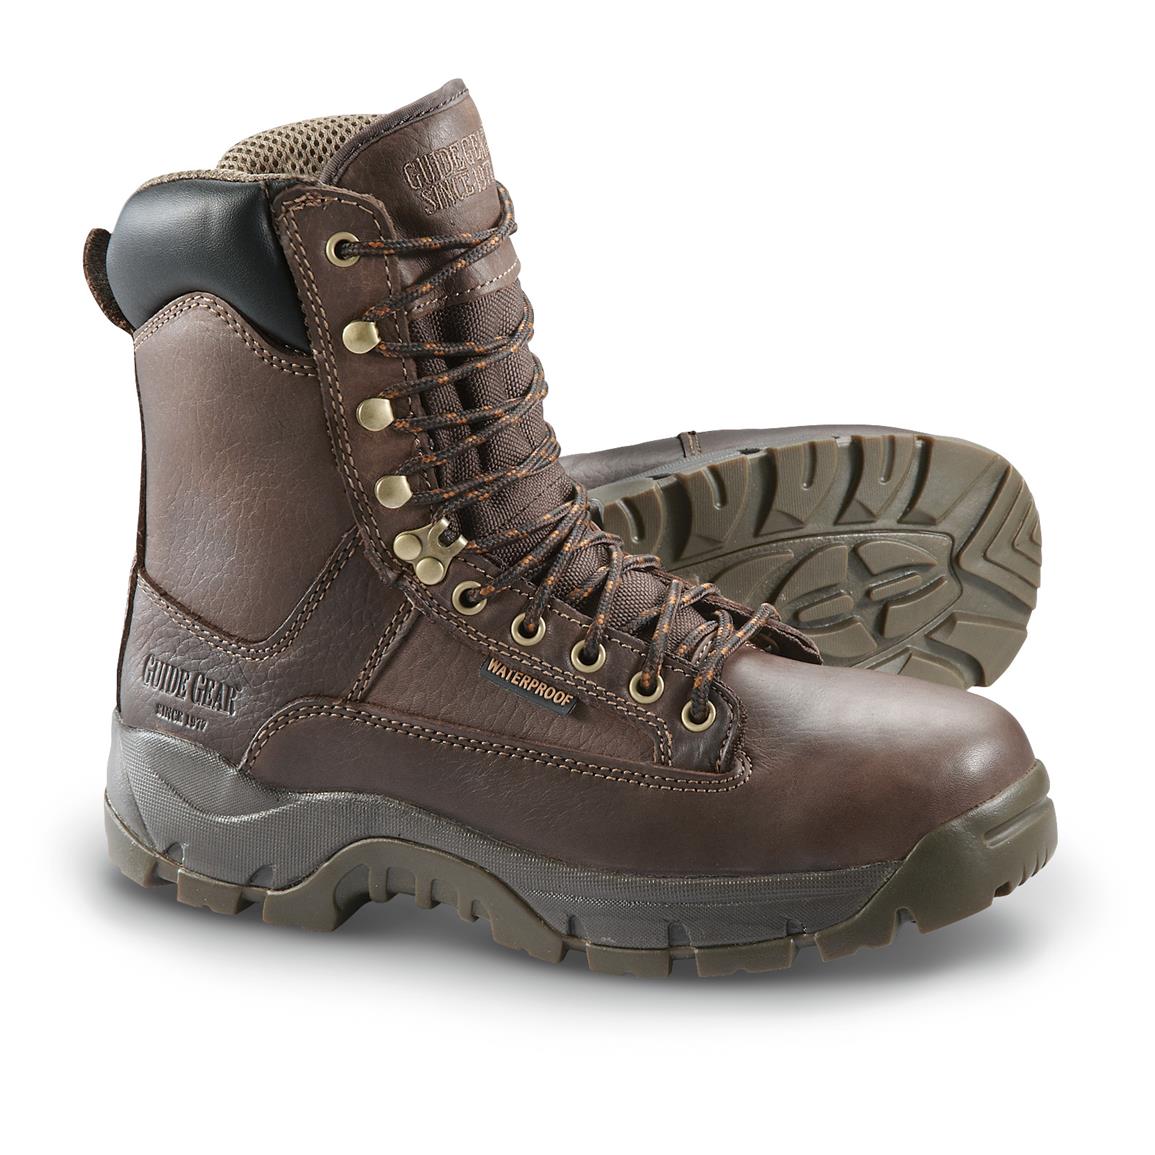 Guide Gear waterproof boots